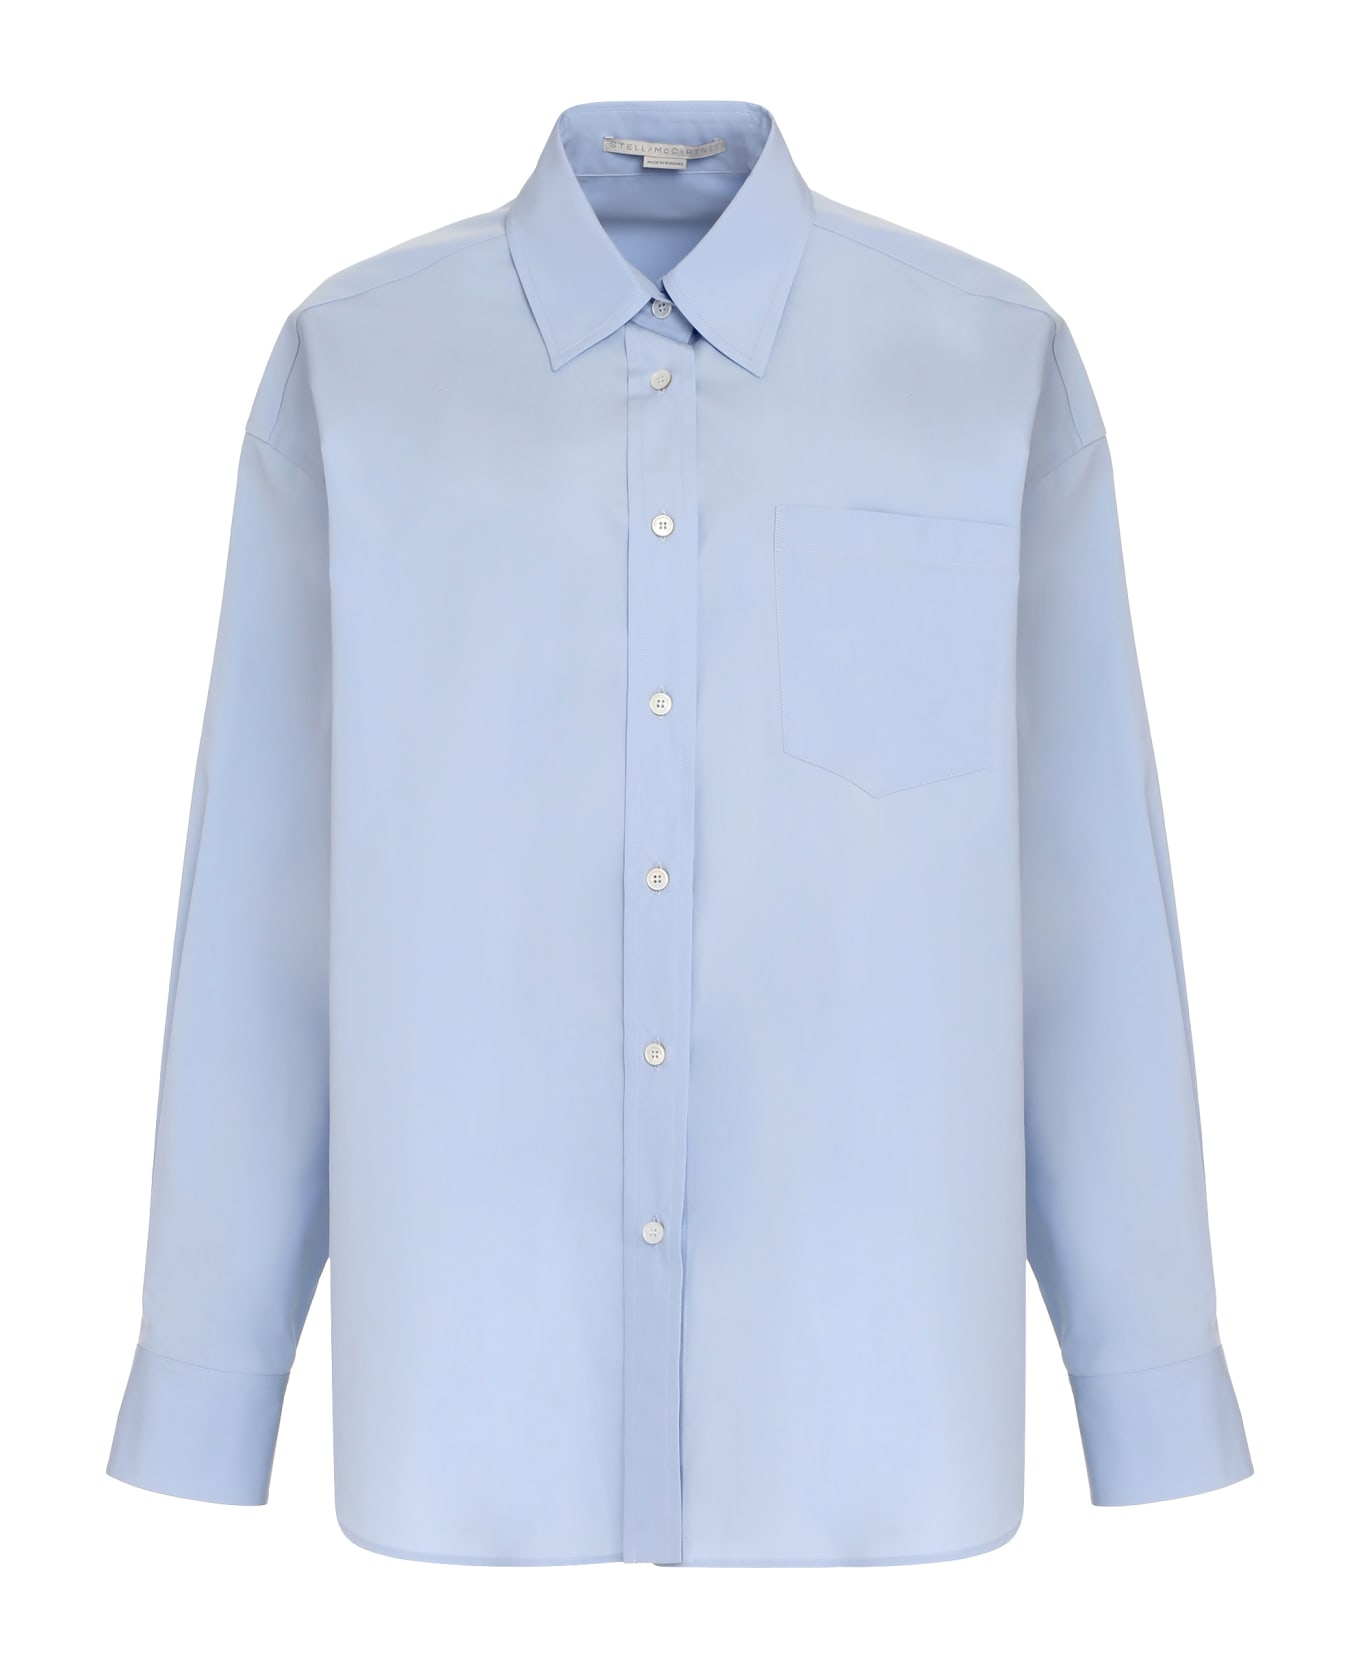 Stella McCartney Chiffon Back Oversized Shirt - Light Blue